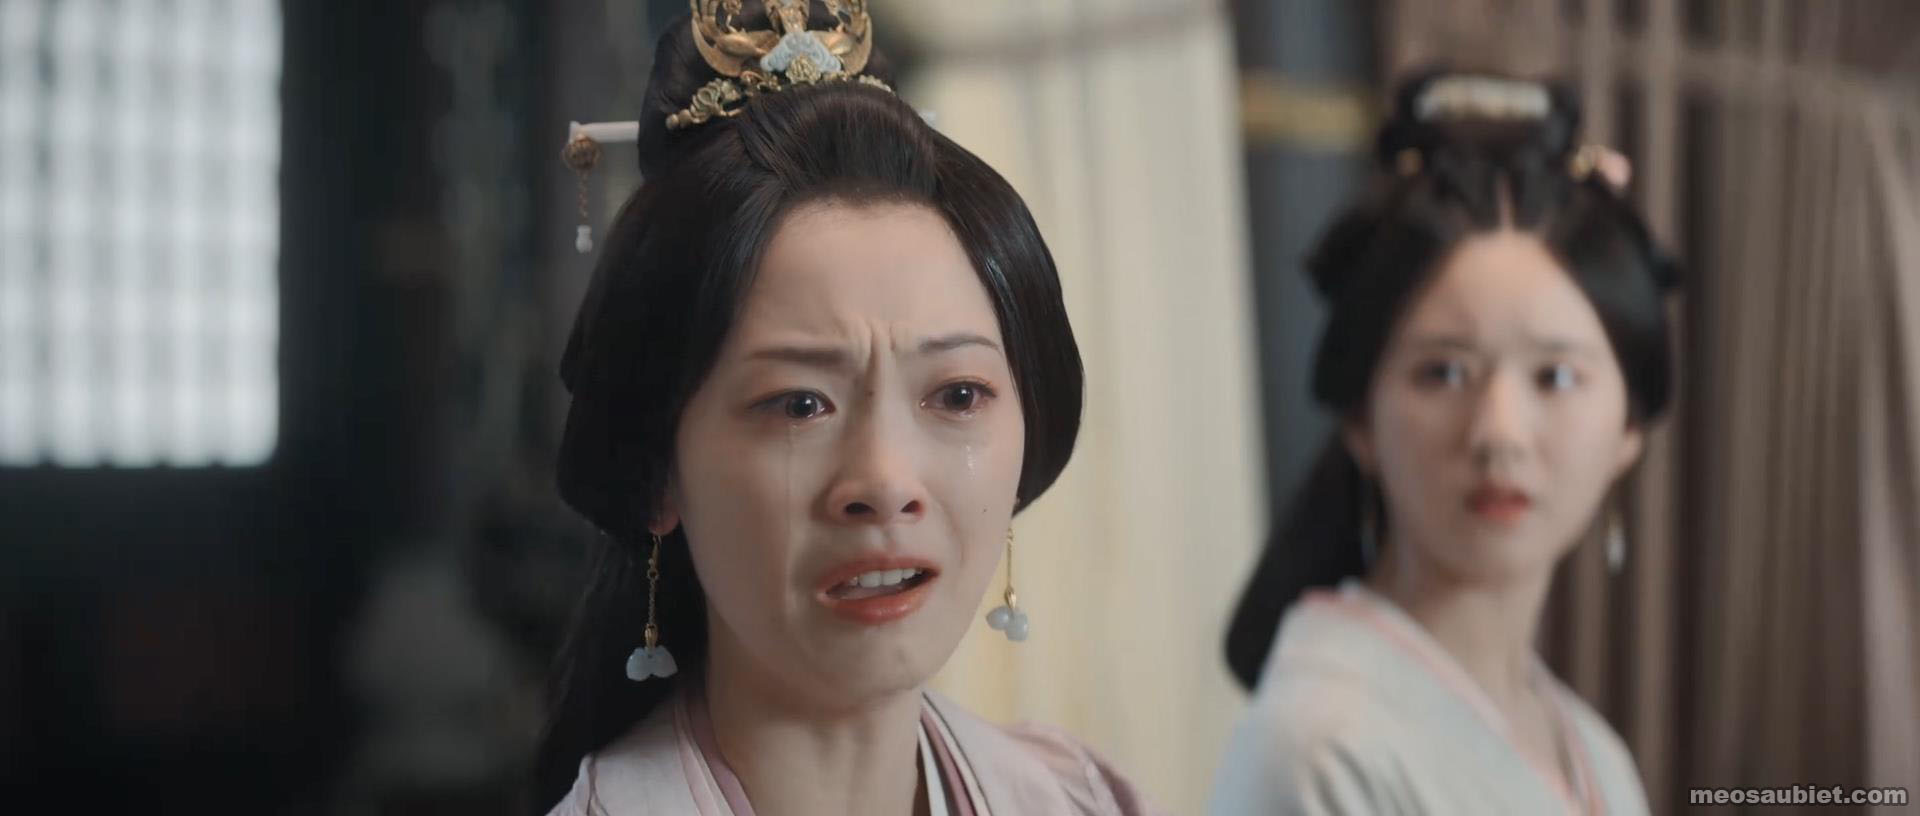 Tinh Hán xán lạn 2022 Thiệu Vân trong vai Thái tử phi 